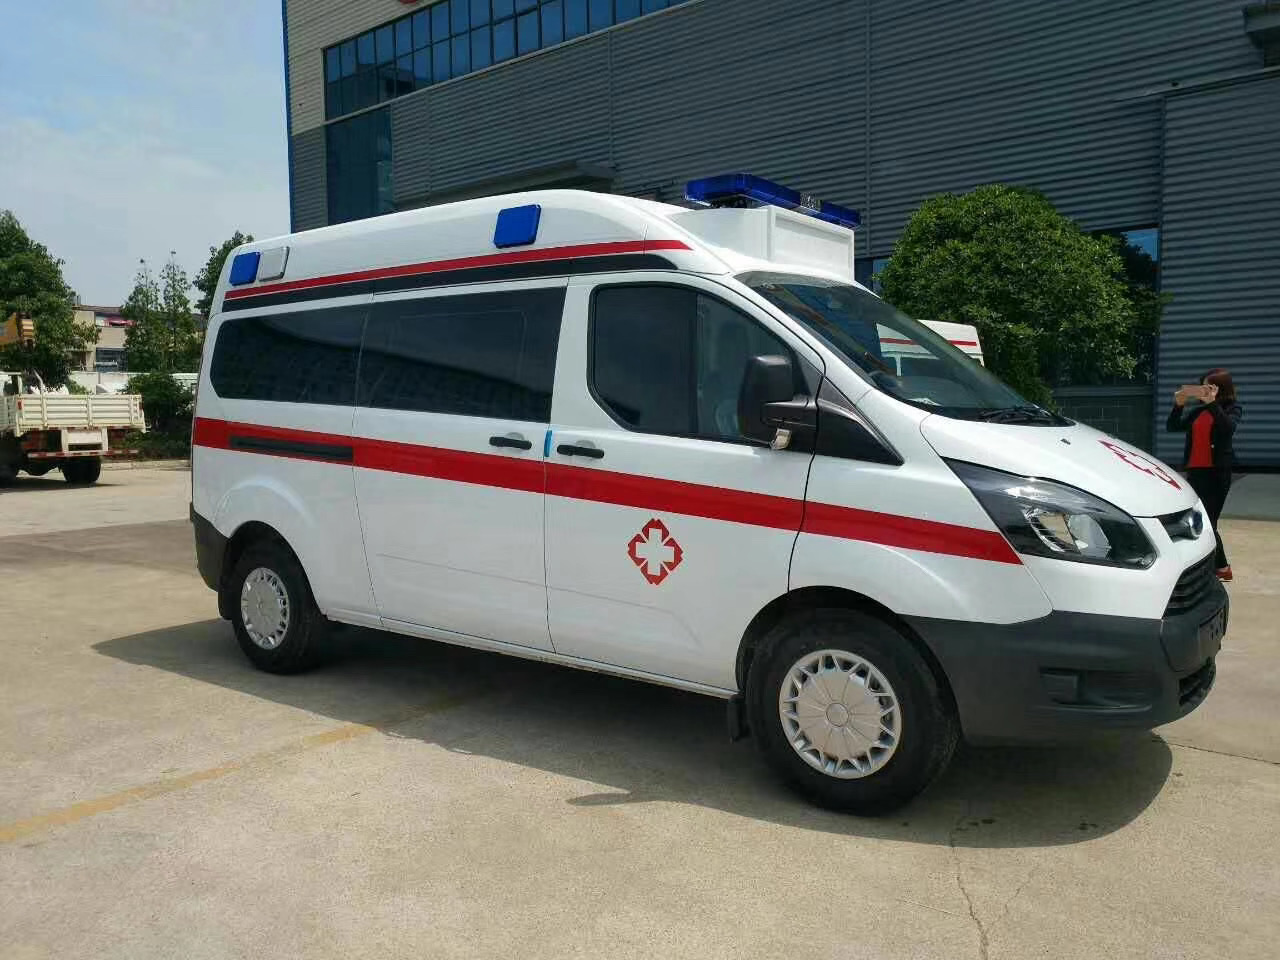 敦化市出院转院救护车